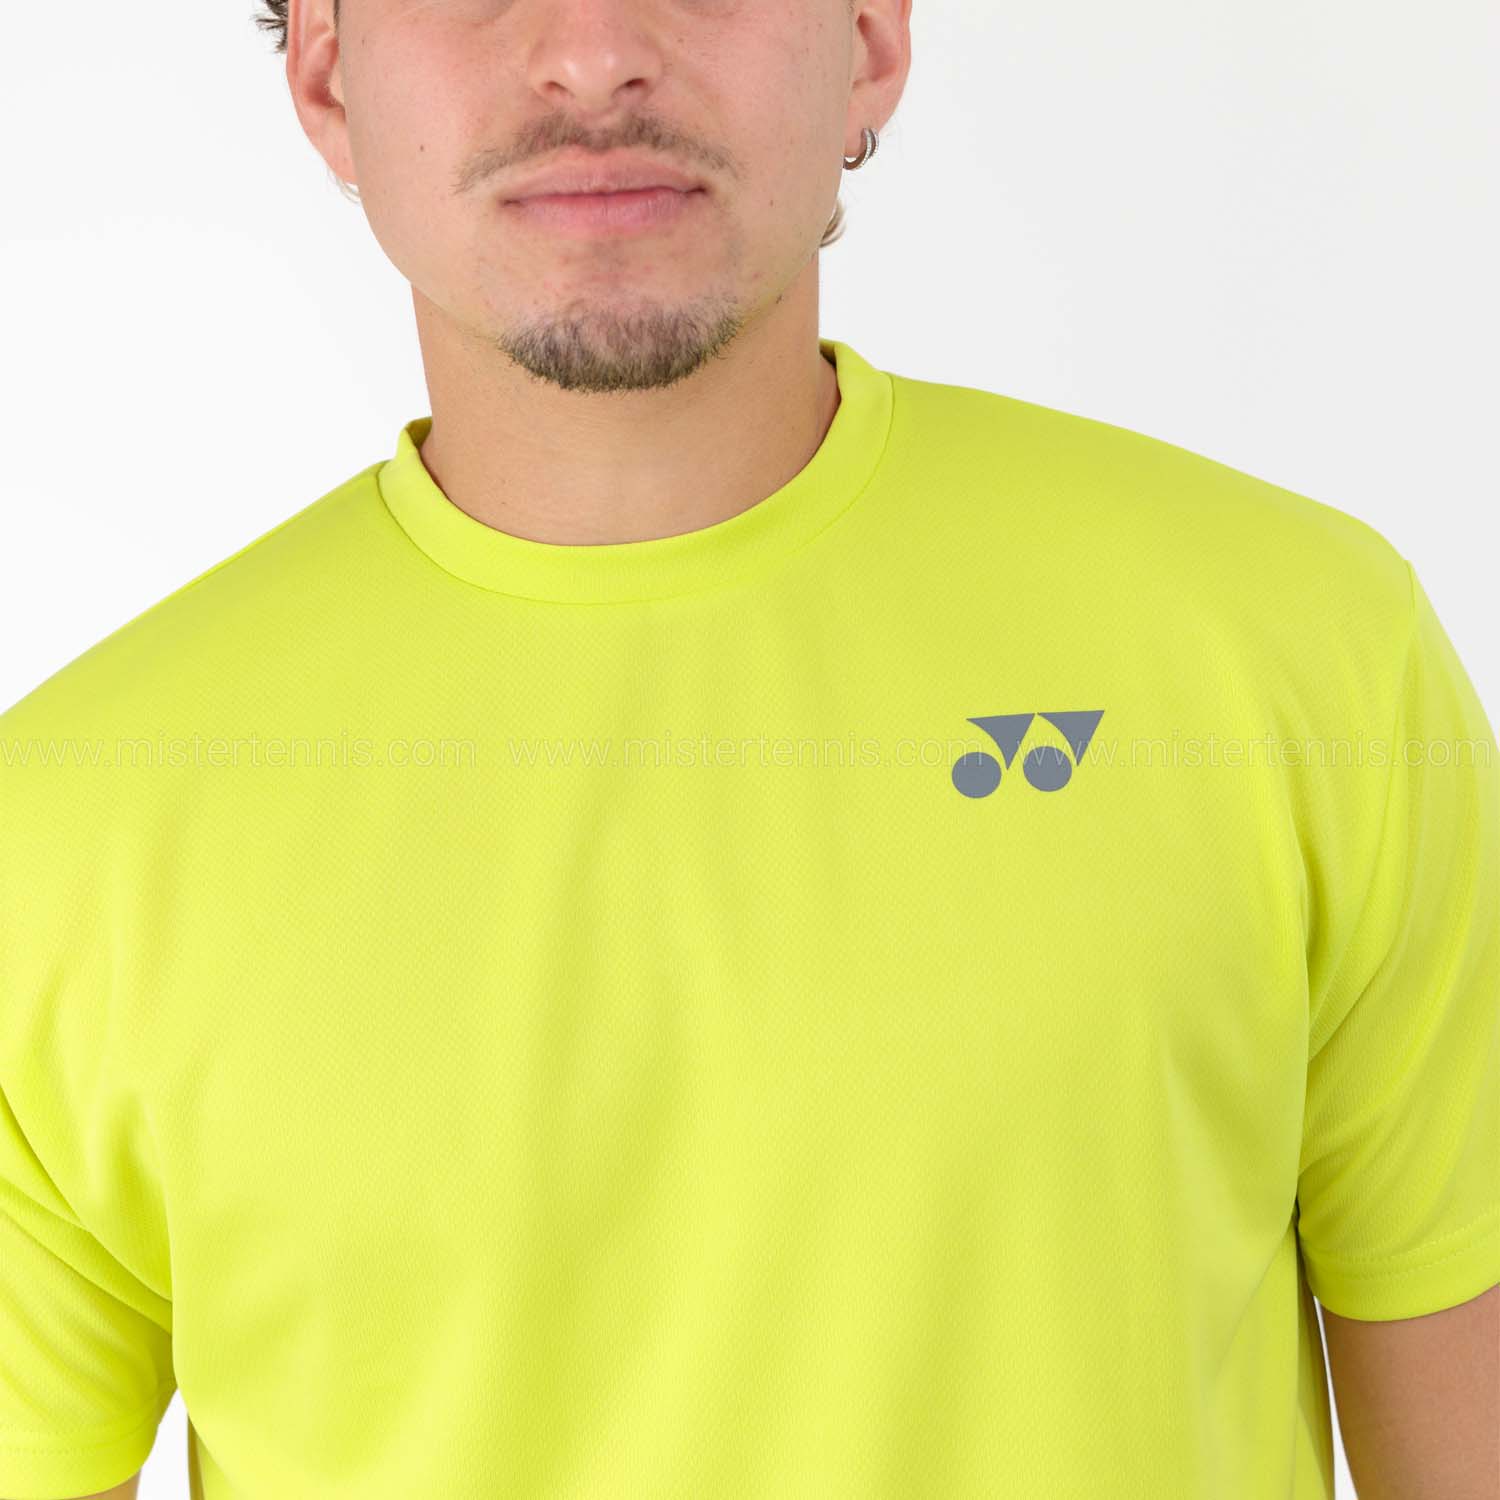 Yonex Practice Camiseta - Lime